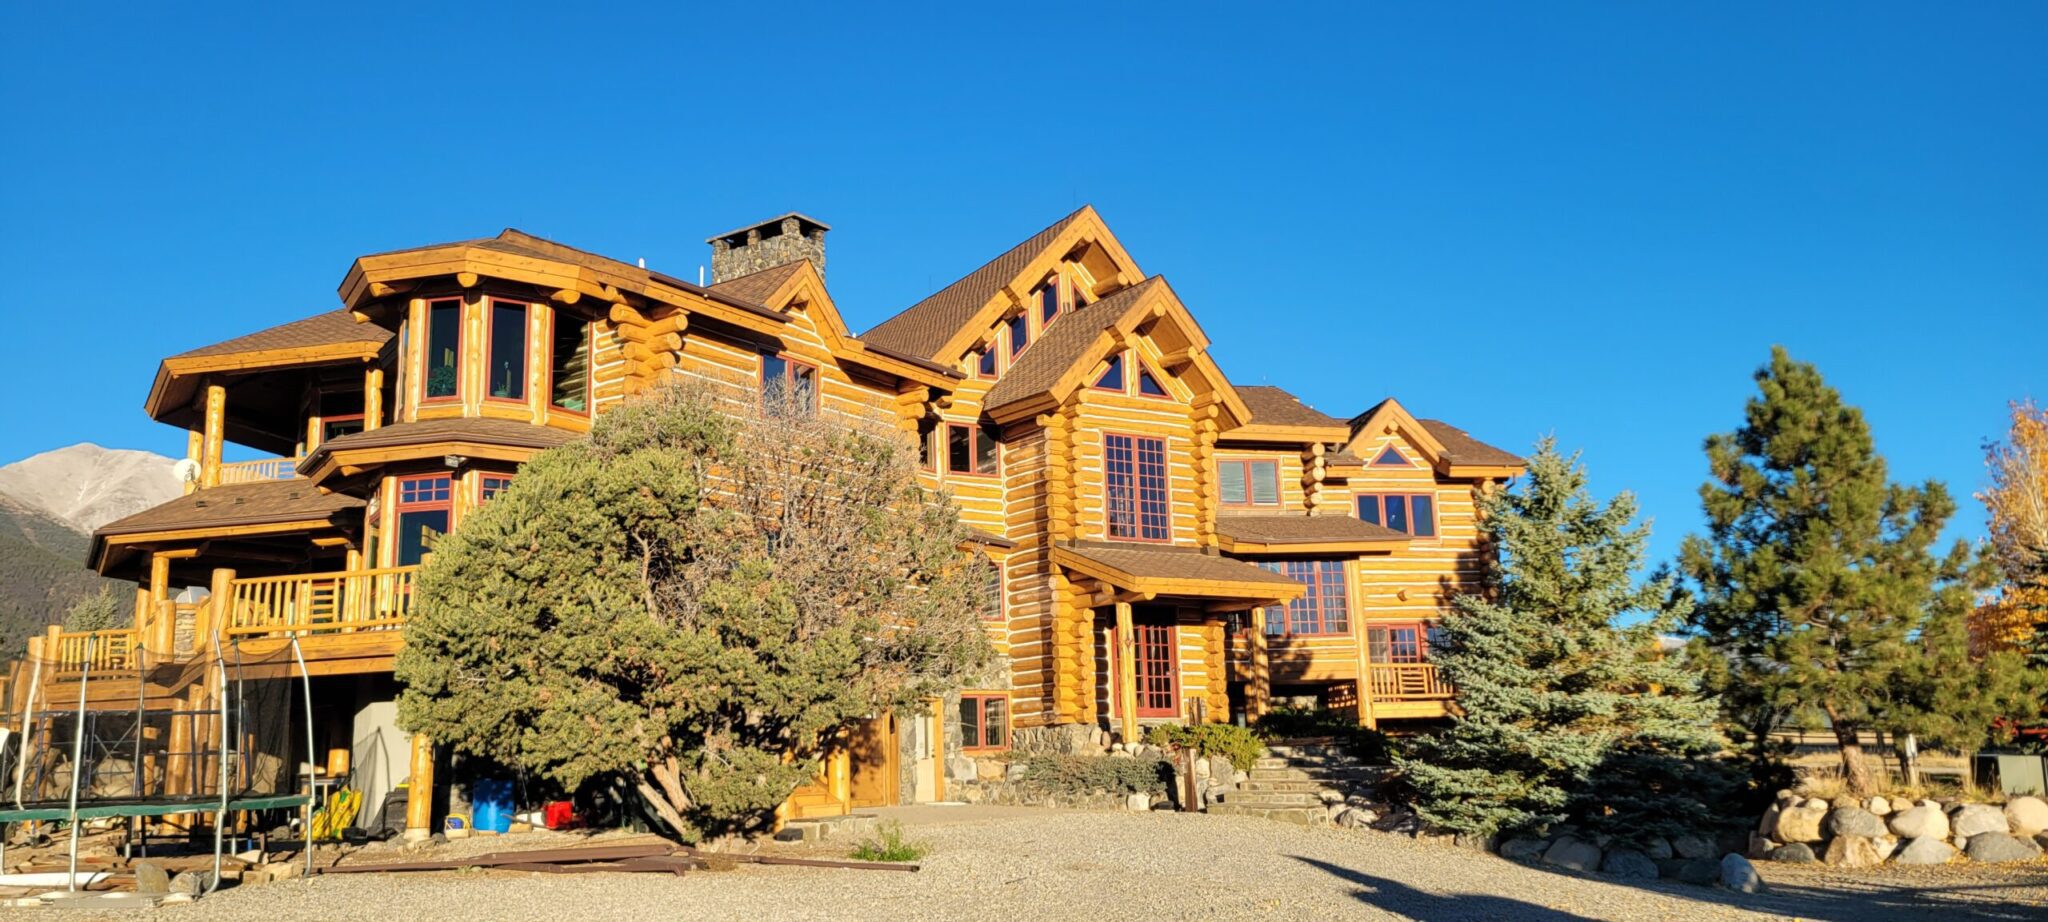 Luxury Log Home Restored in Buena Vista, Colorado